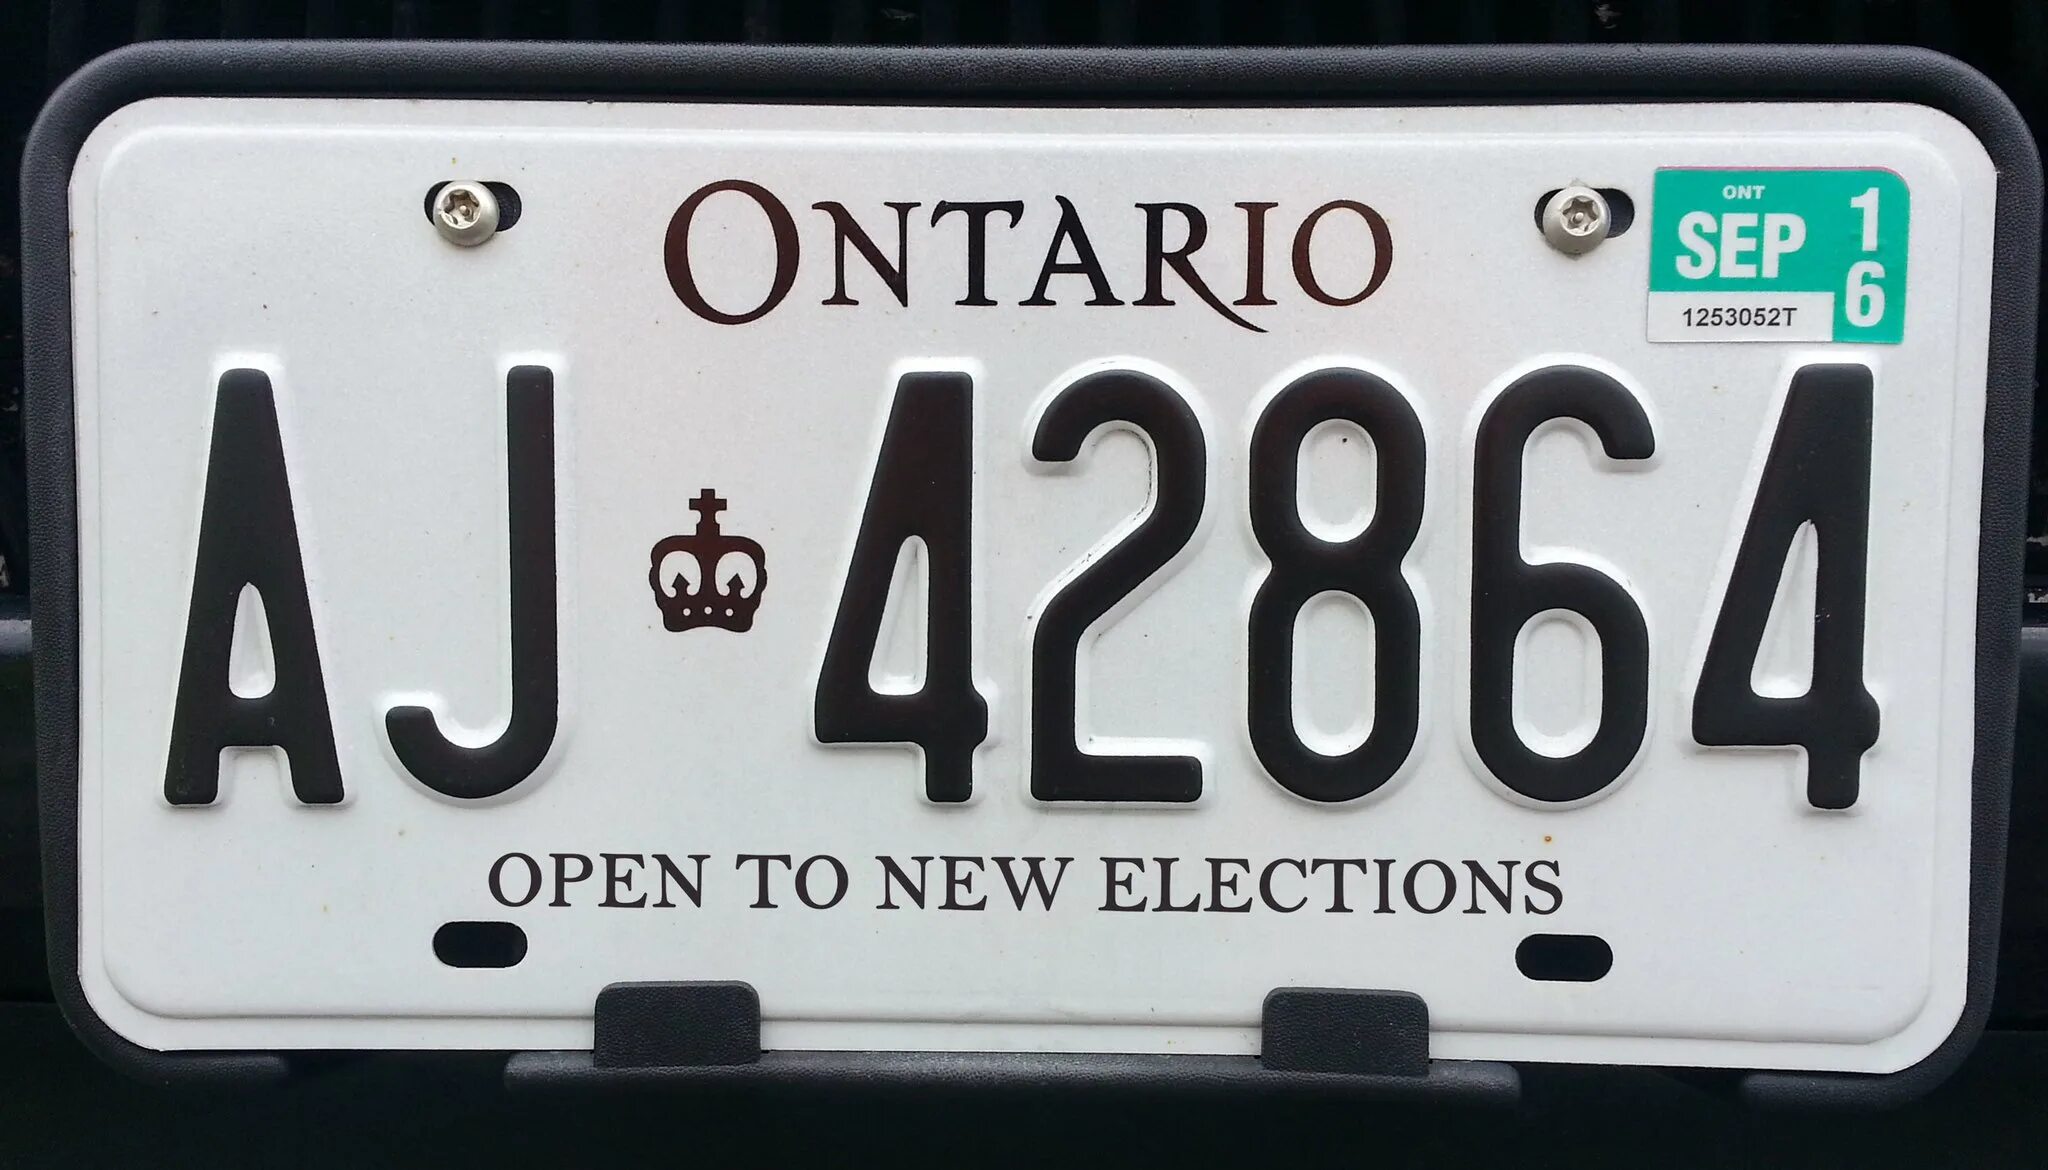 Пример американского номера. Номерной знак автомобиля. Иностранные номерные знаки автомобильные. Номерные знаки Онтарио. Американские номера.